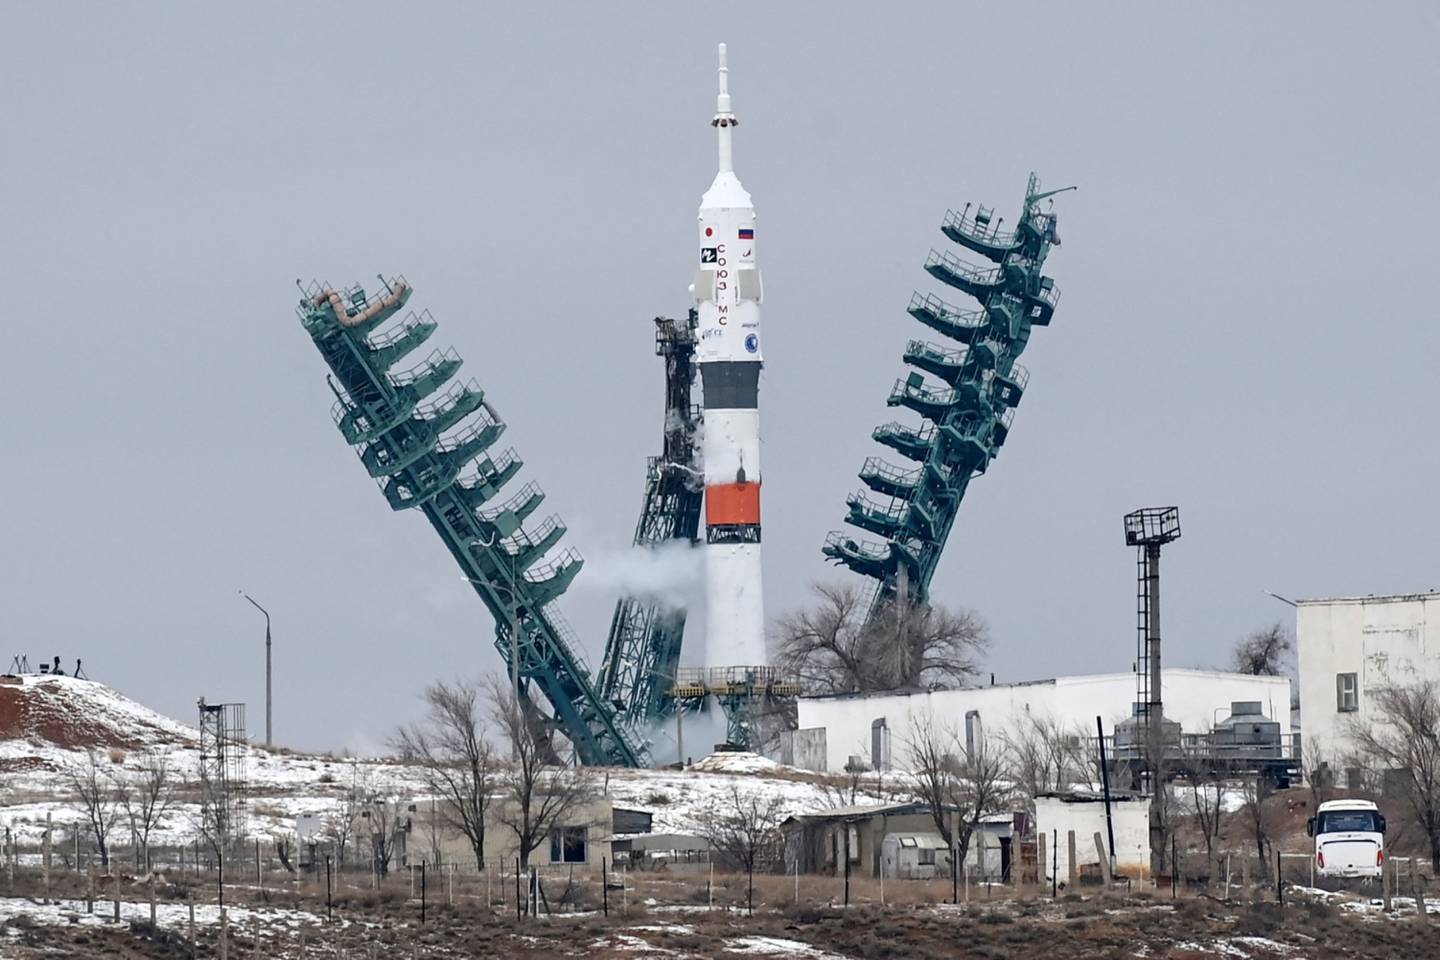 Soyuz MS-20